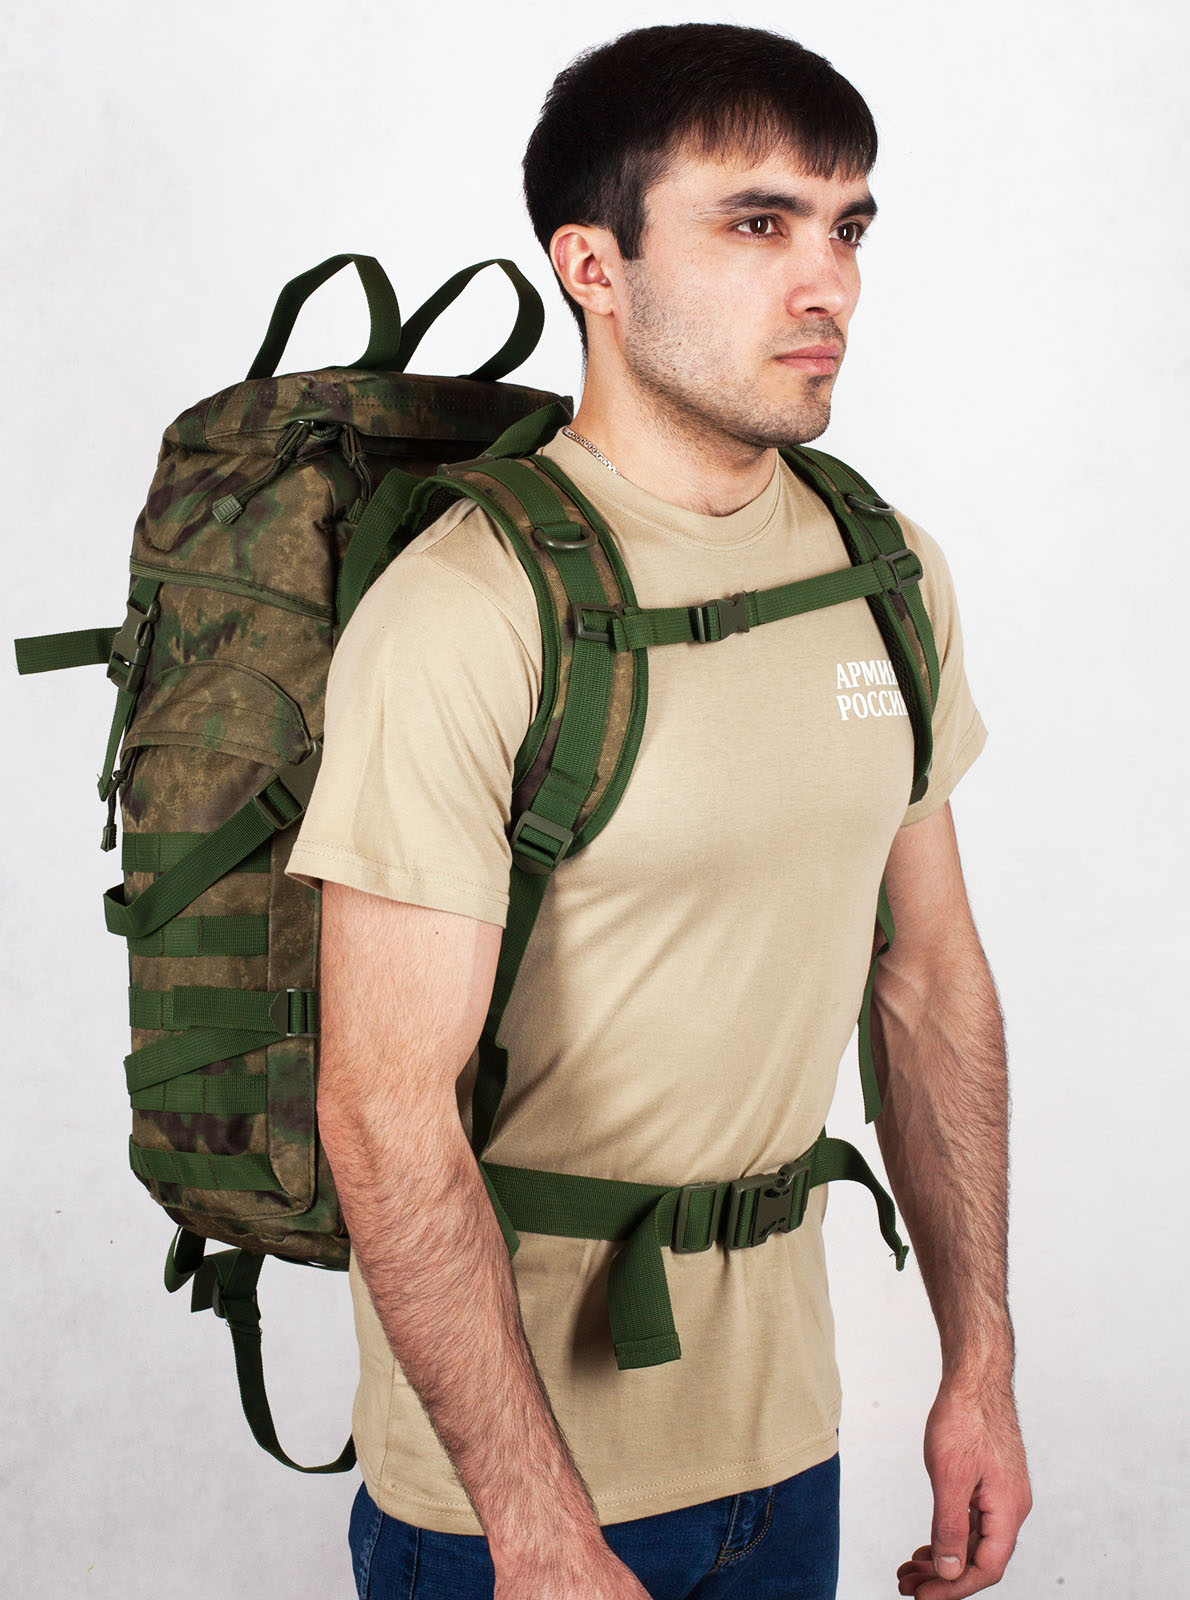 Армейский походный рюкзак камуфляж A-TACS FG с эмблемой "Россия"  